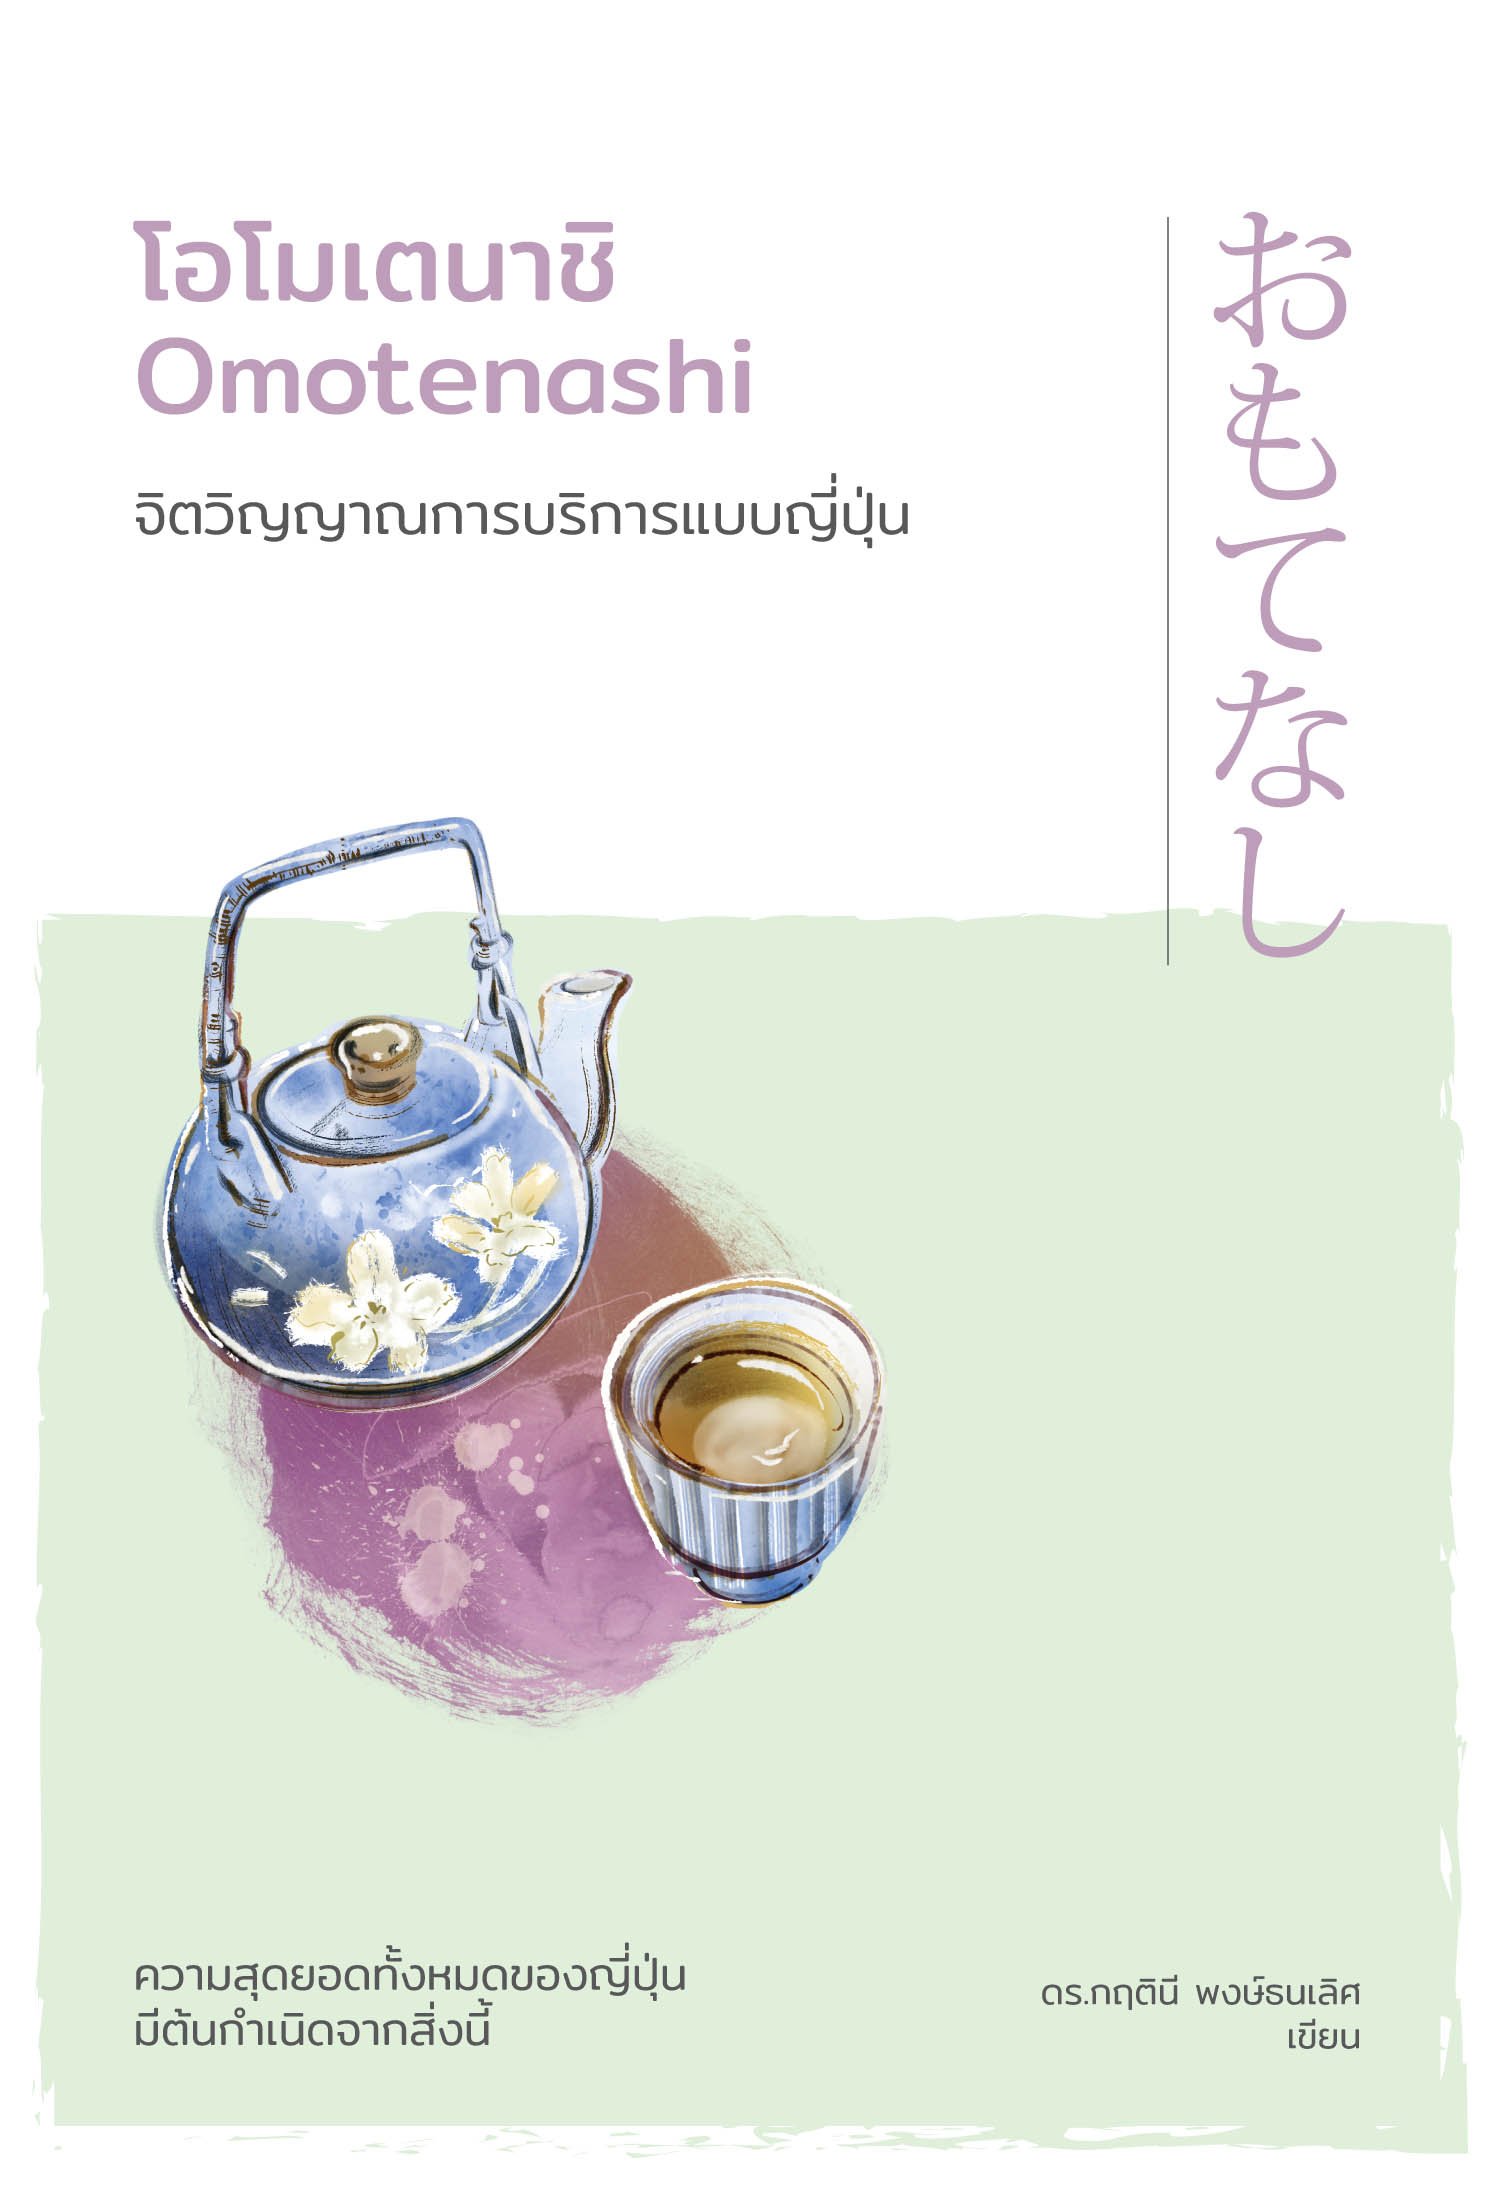 โอโมเตนาชิ จิตวิญญาณการบริการแบบญี่ปุ่น